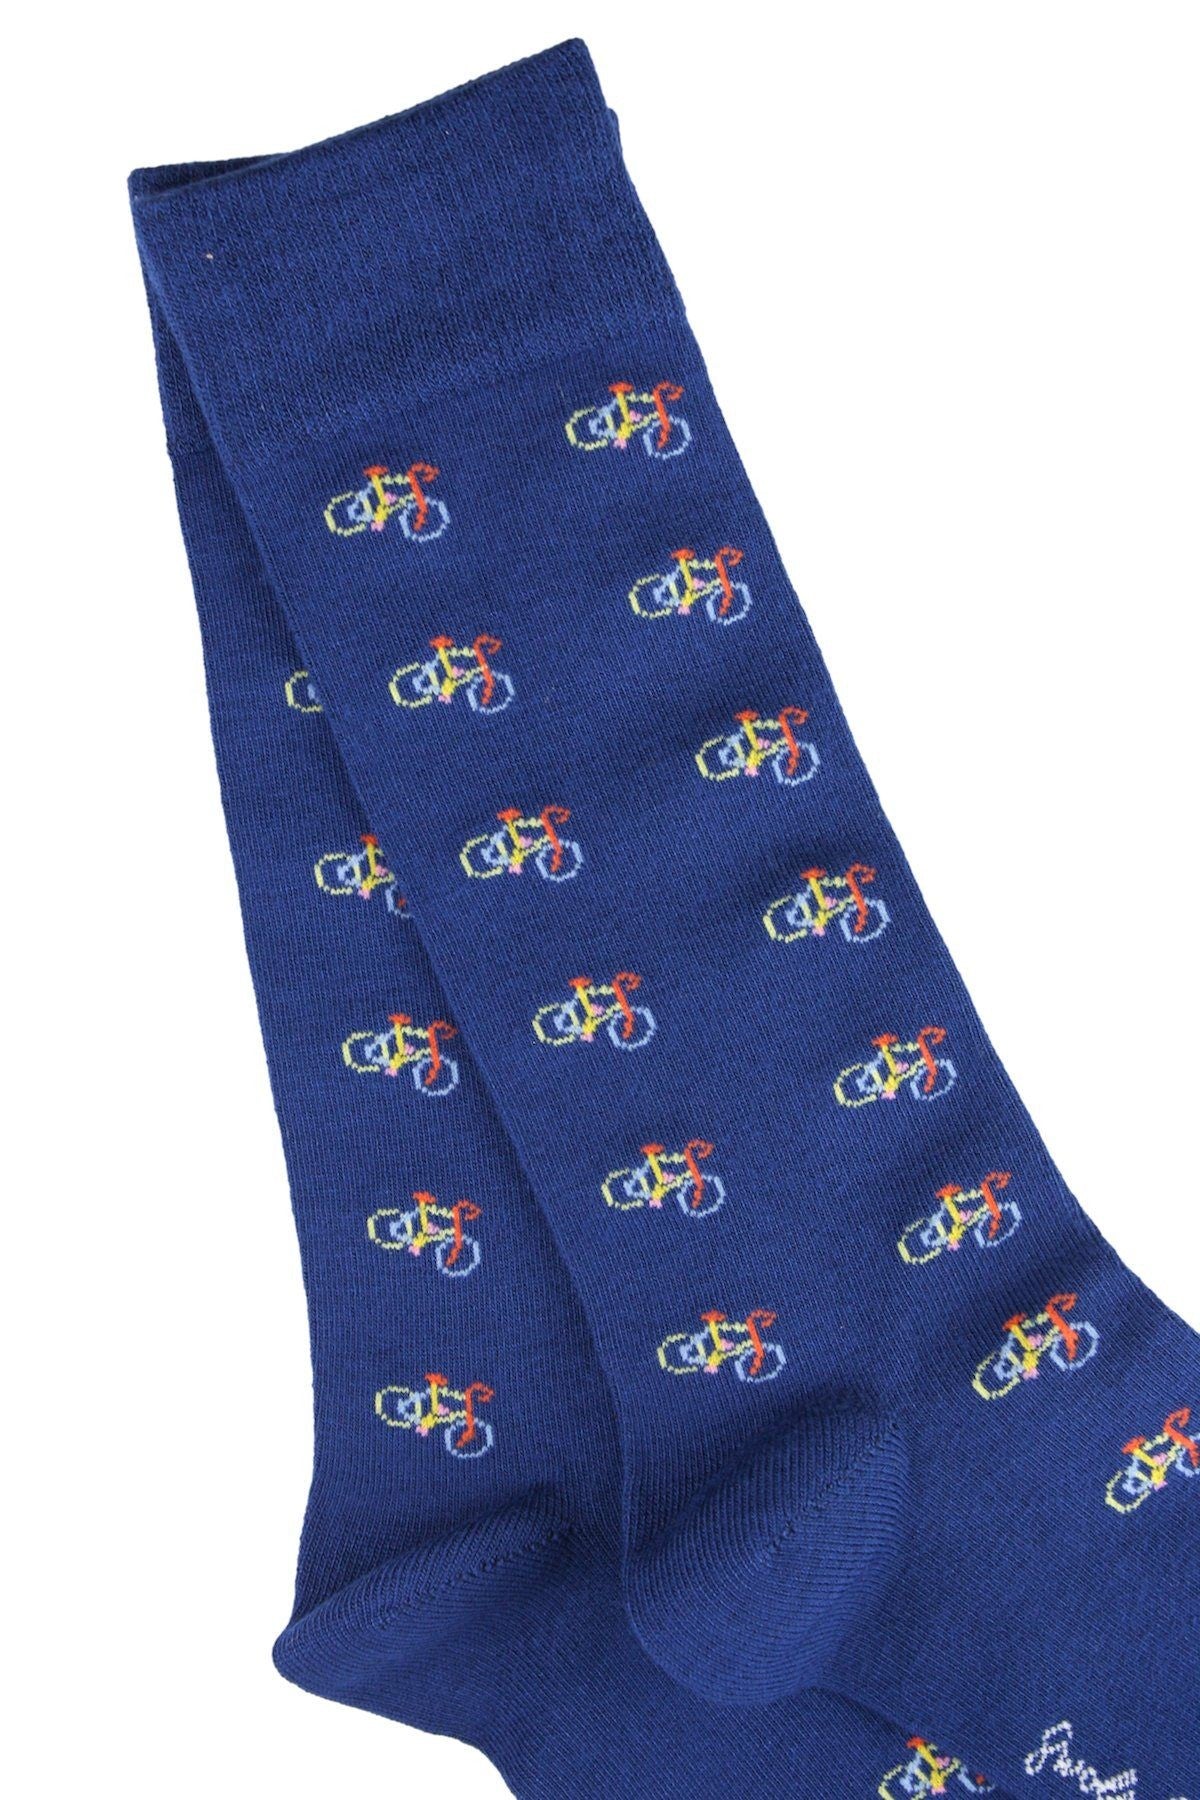 Swole Panda Bamboo Bicycle Socks Blue